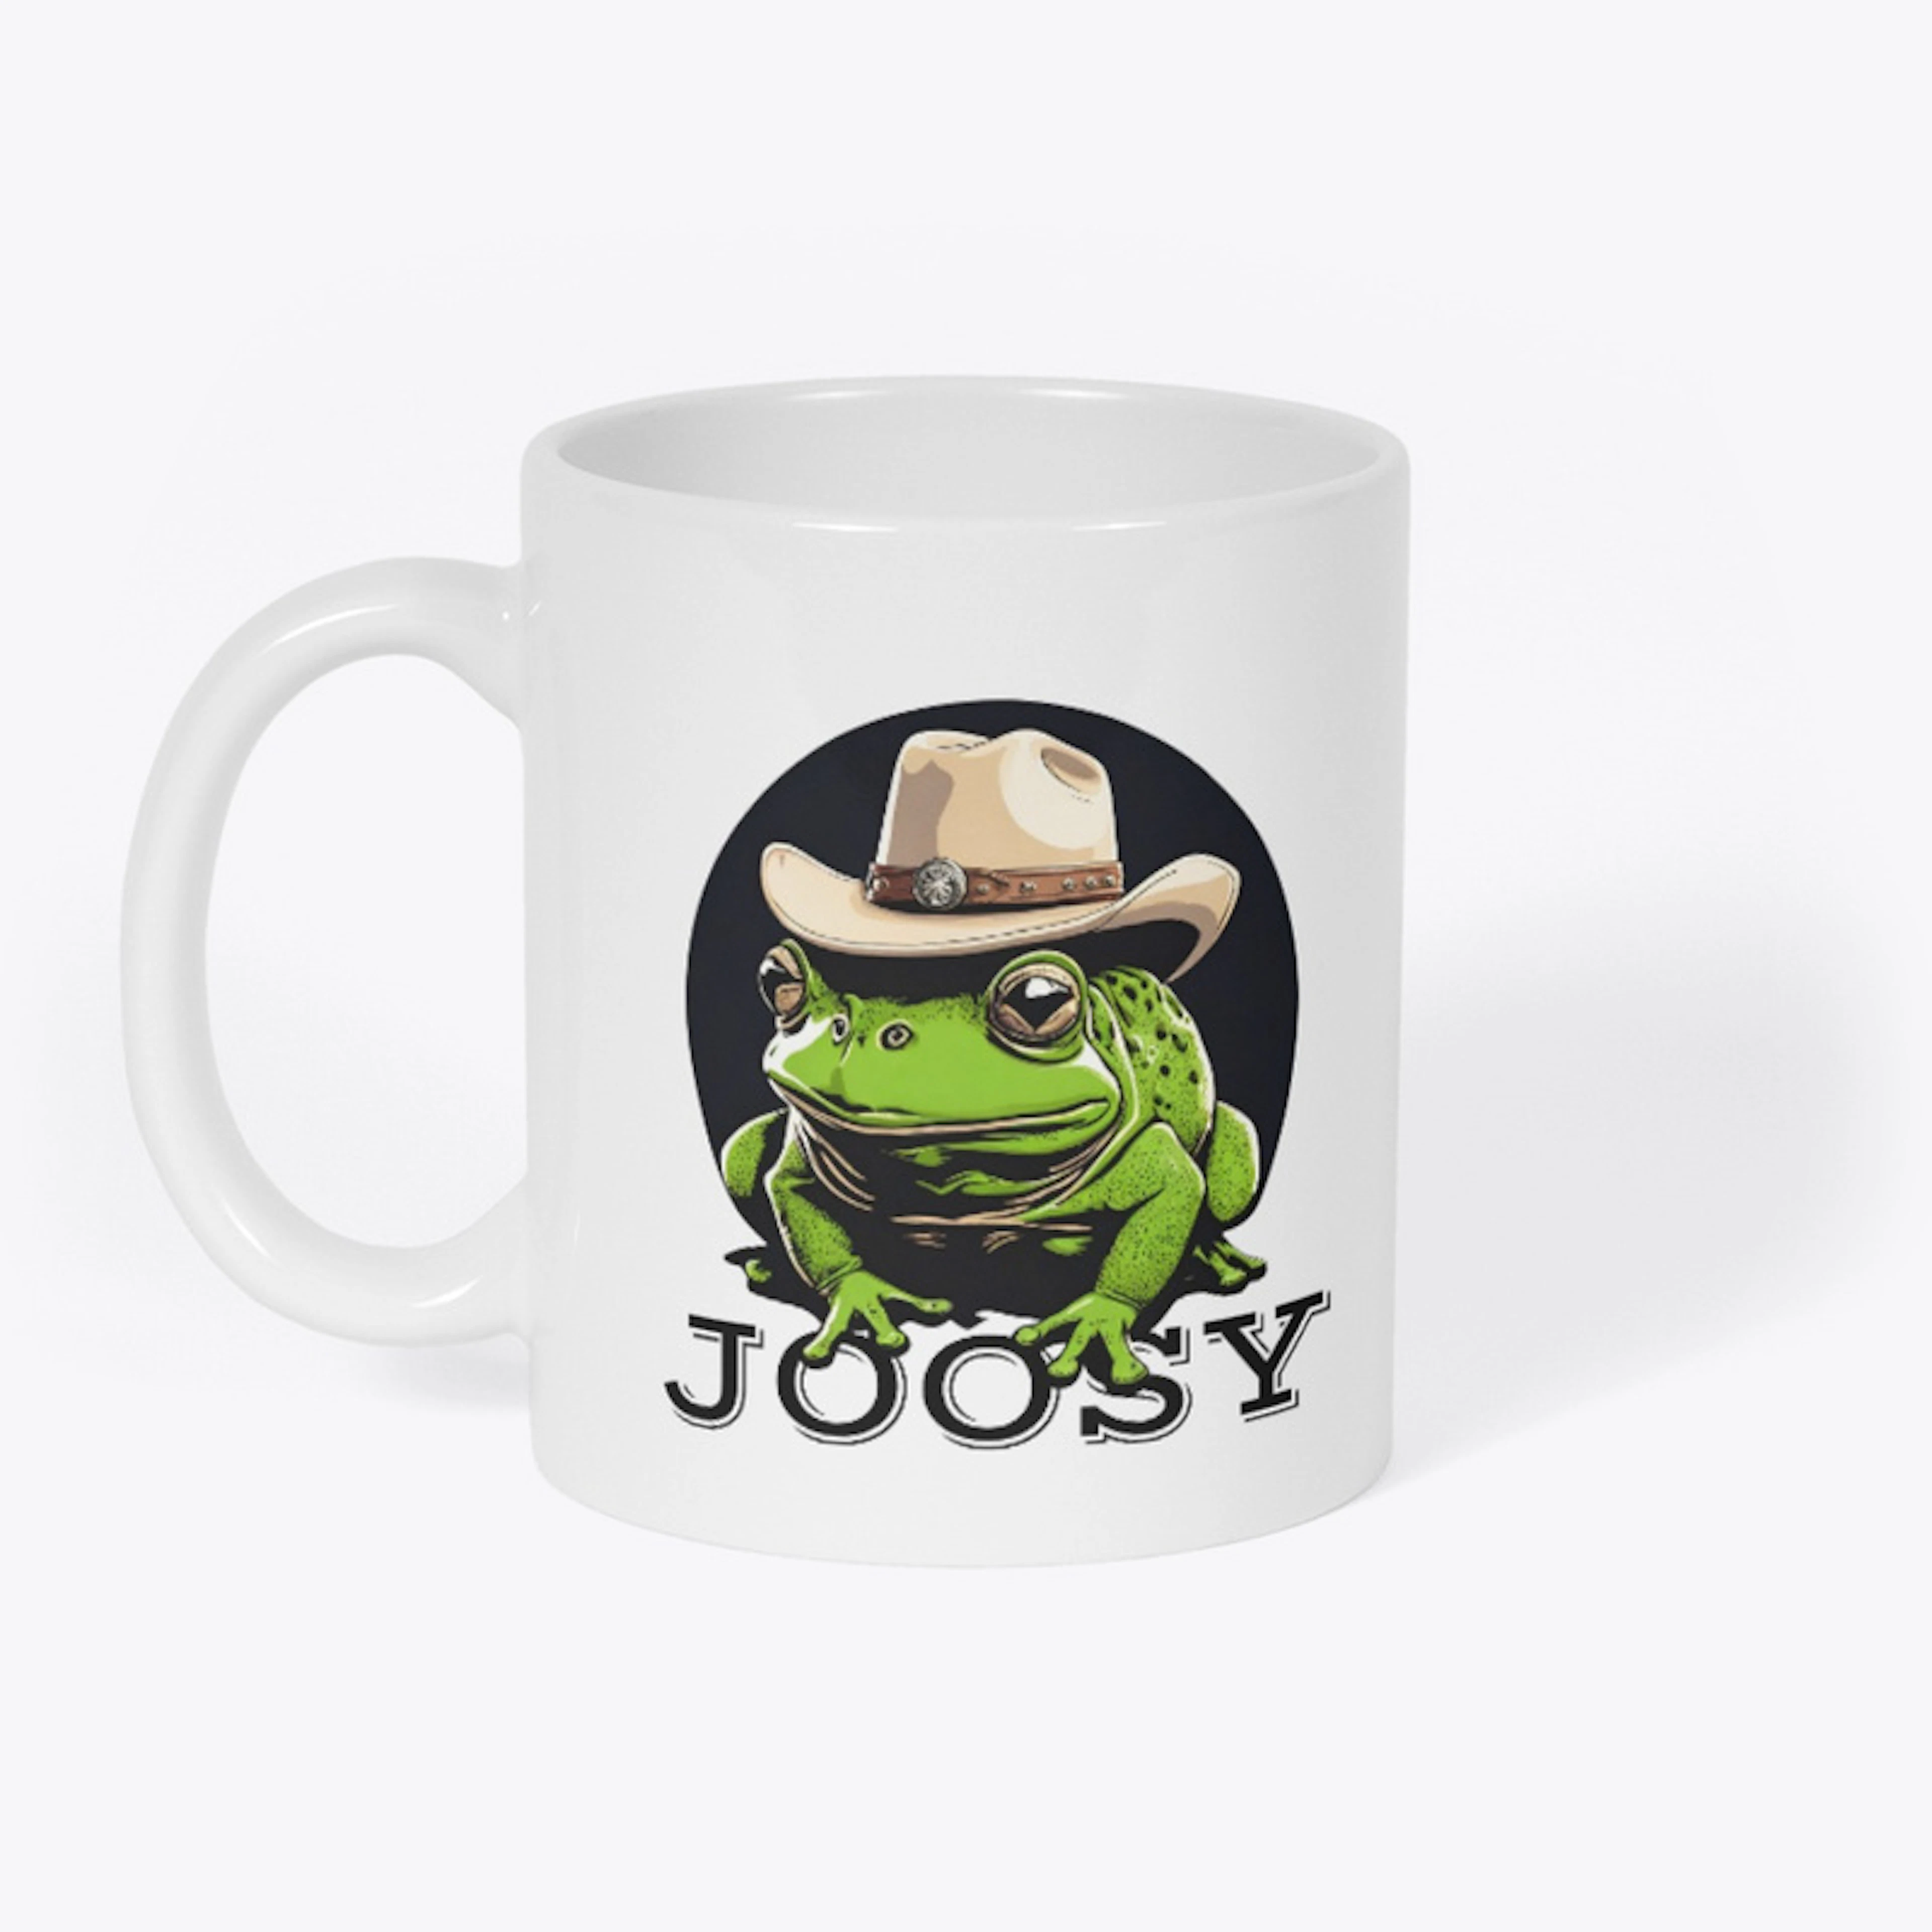 Joosy The frog - Realistic